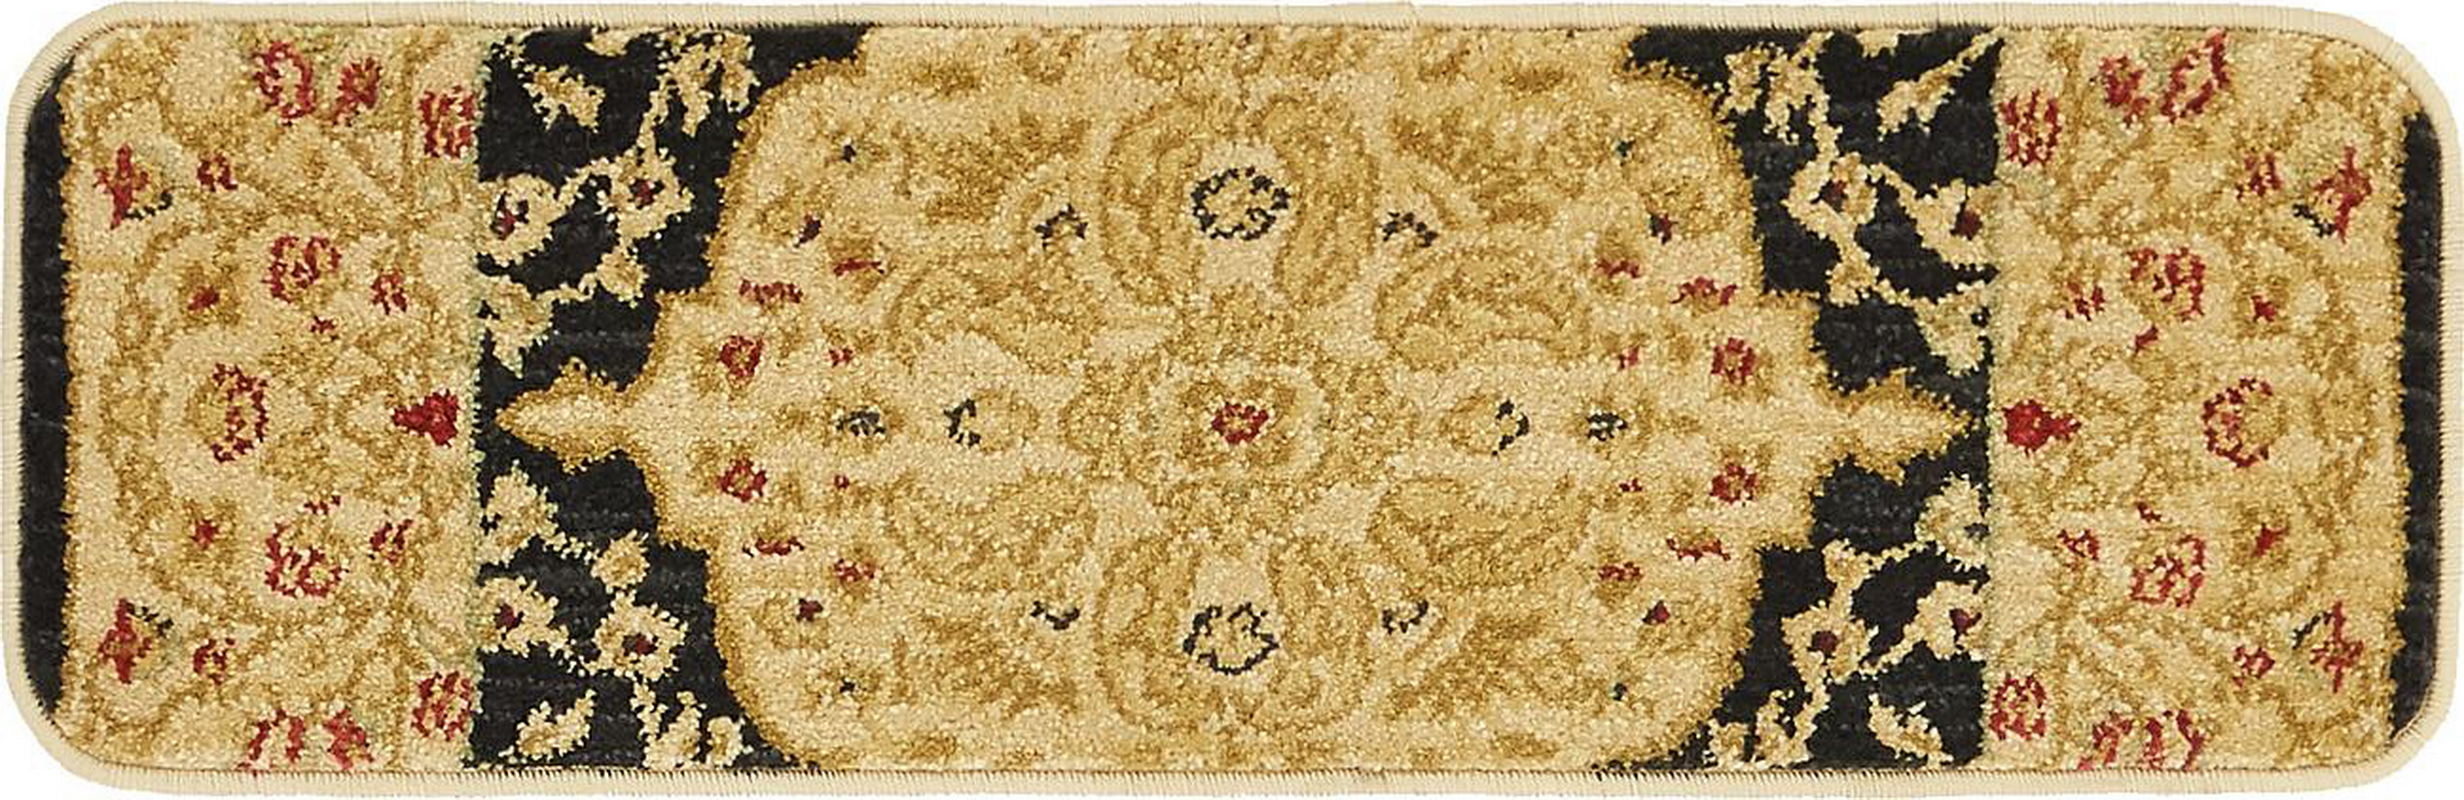 古典经典地毯ID10280